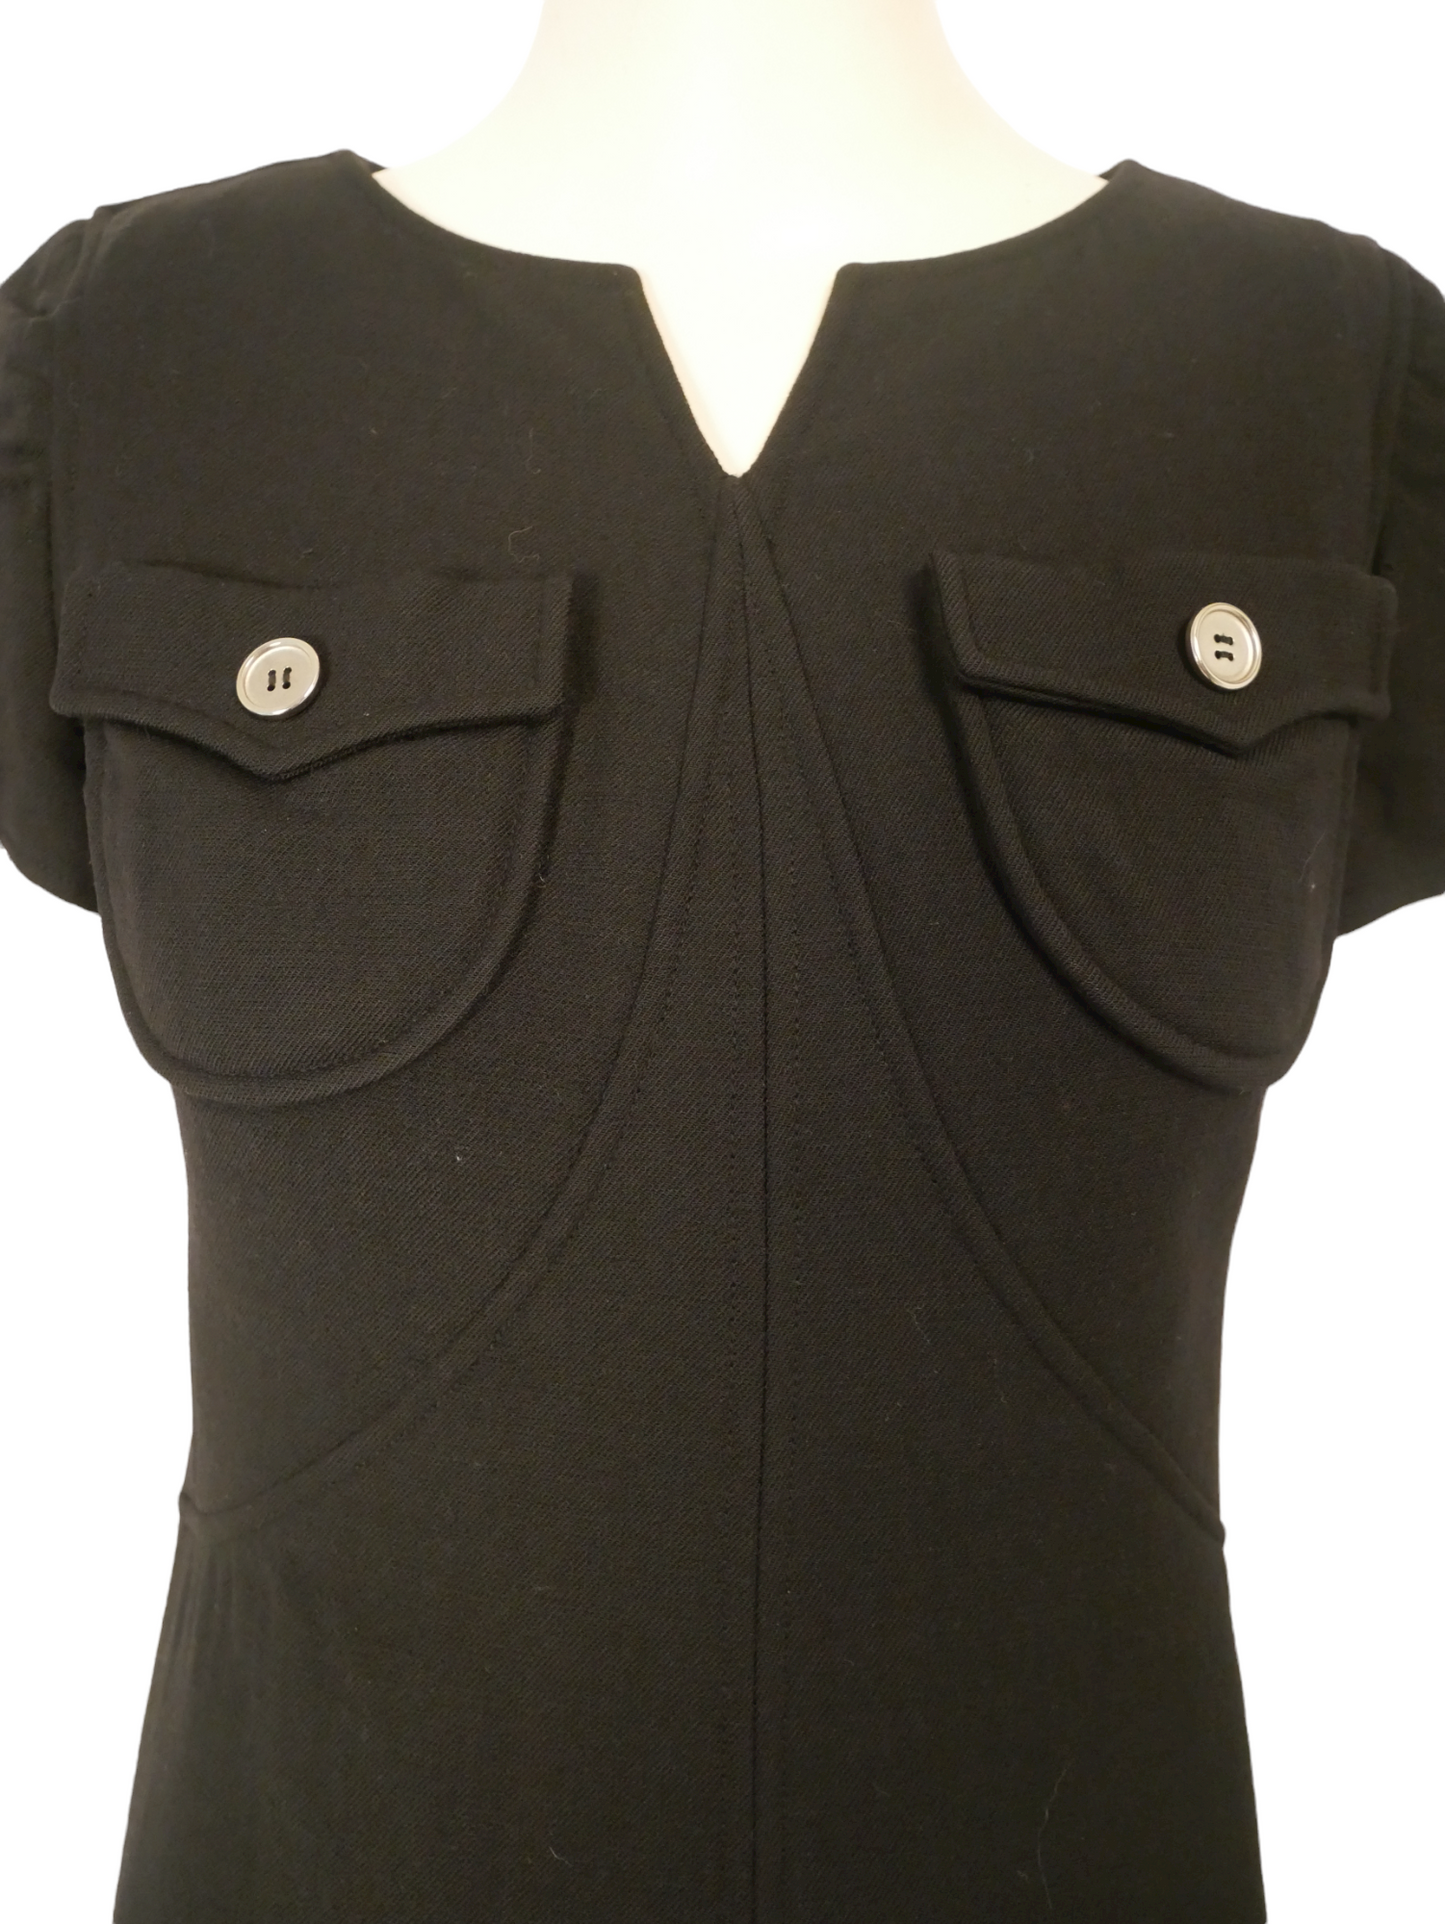 Courrèges vintage black mini dress - S - 1980s